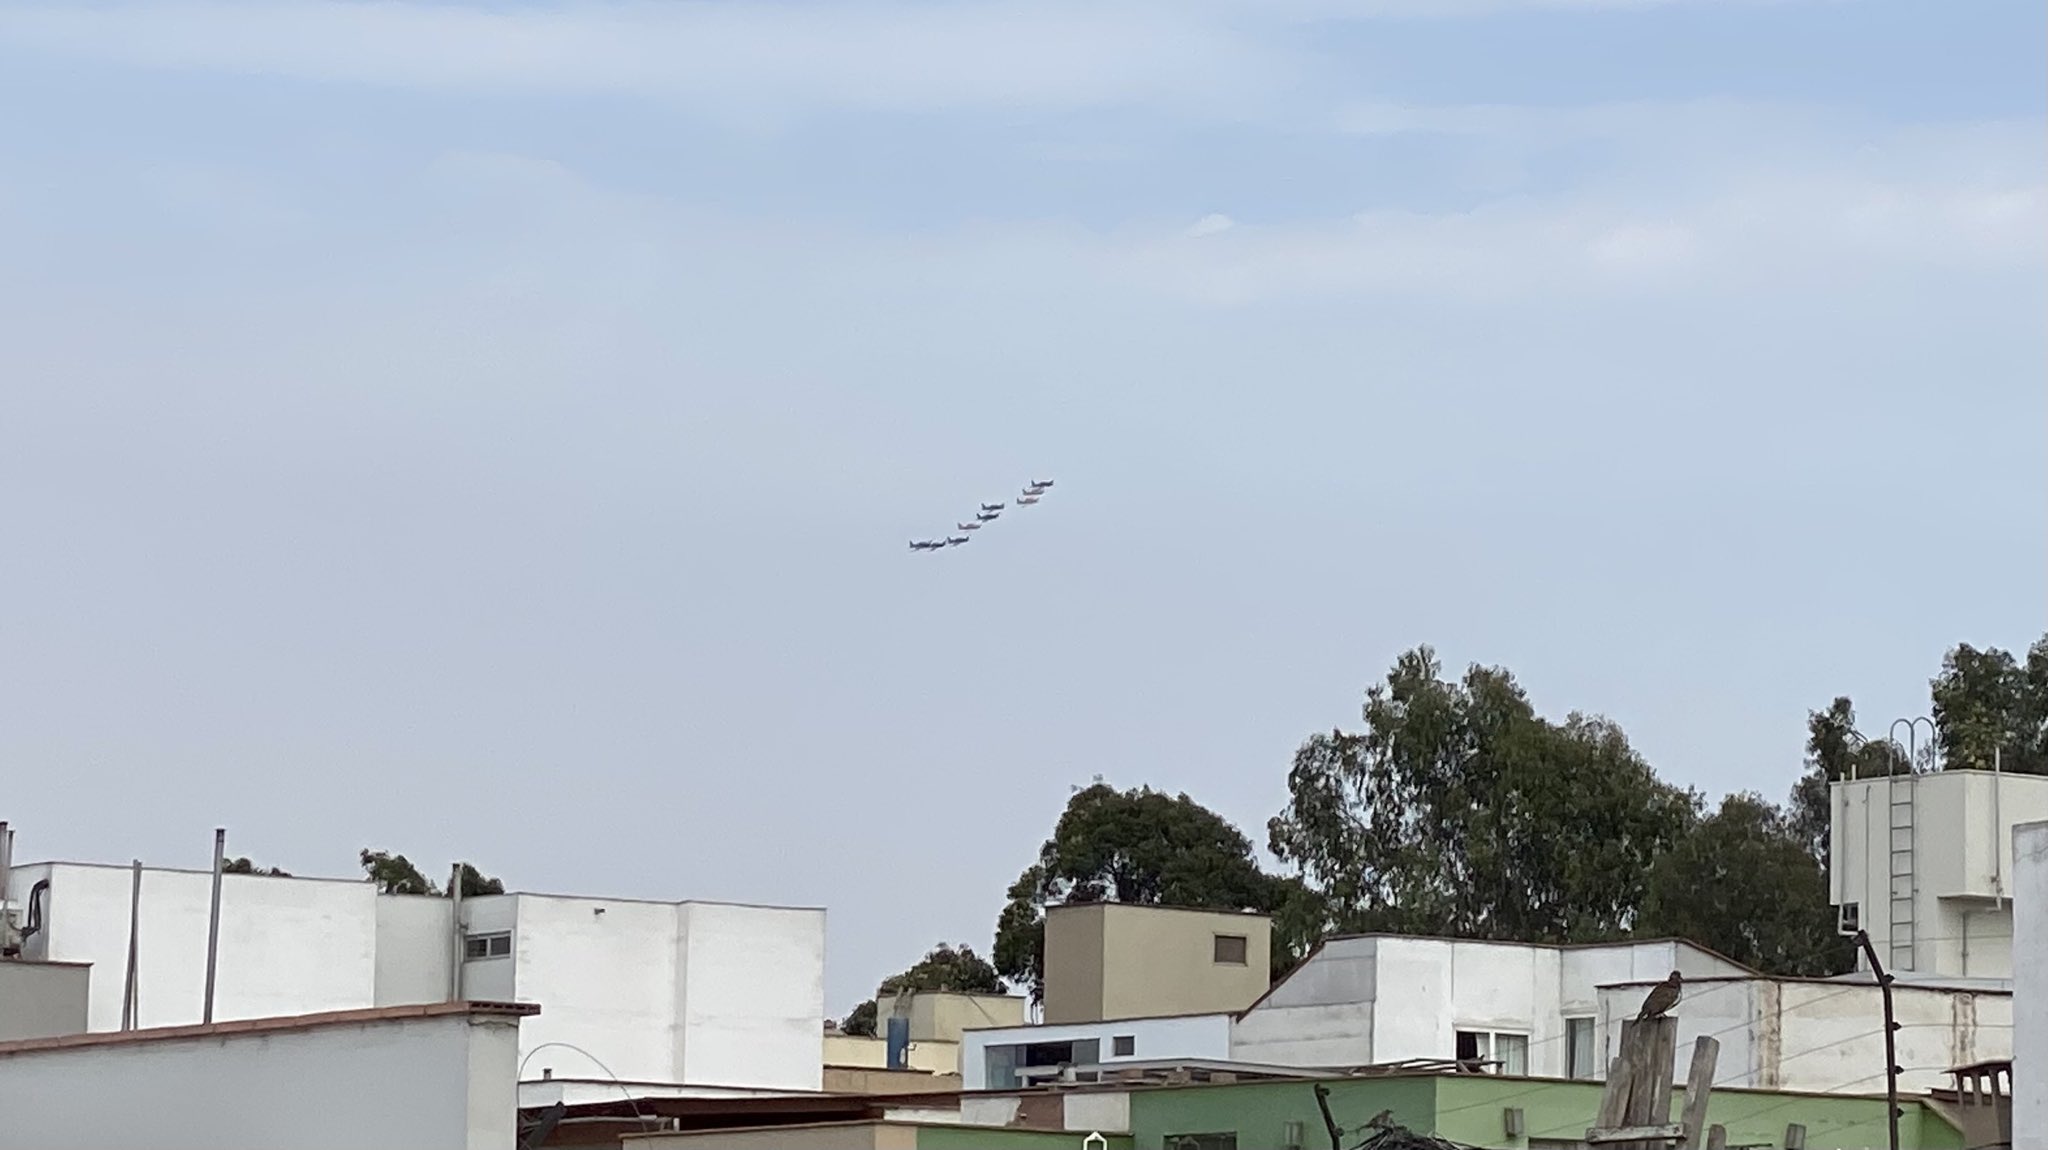 Miraflores: Sobrevuelo de aviones de guerra en cielo limeño sorprendió a vecinos